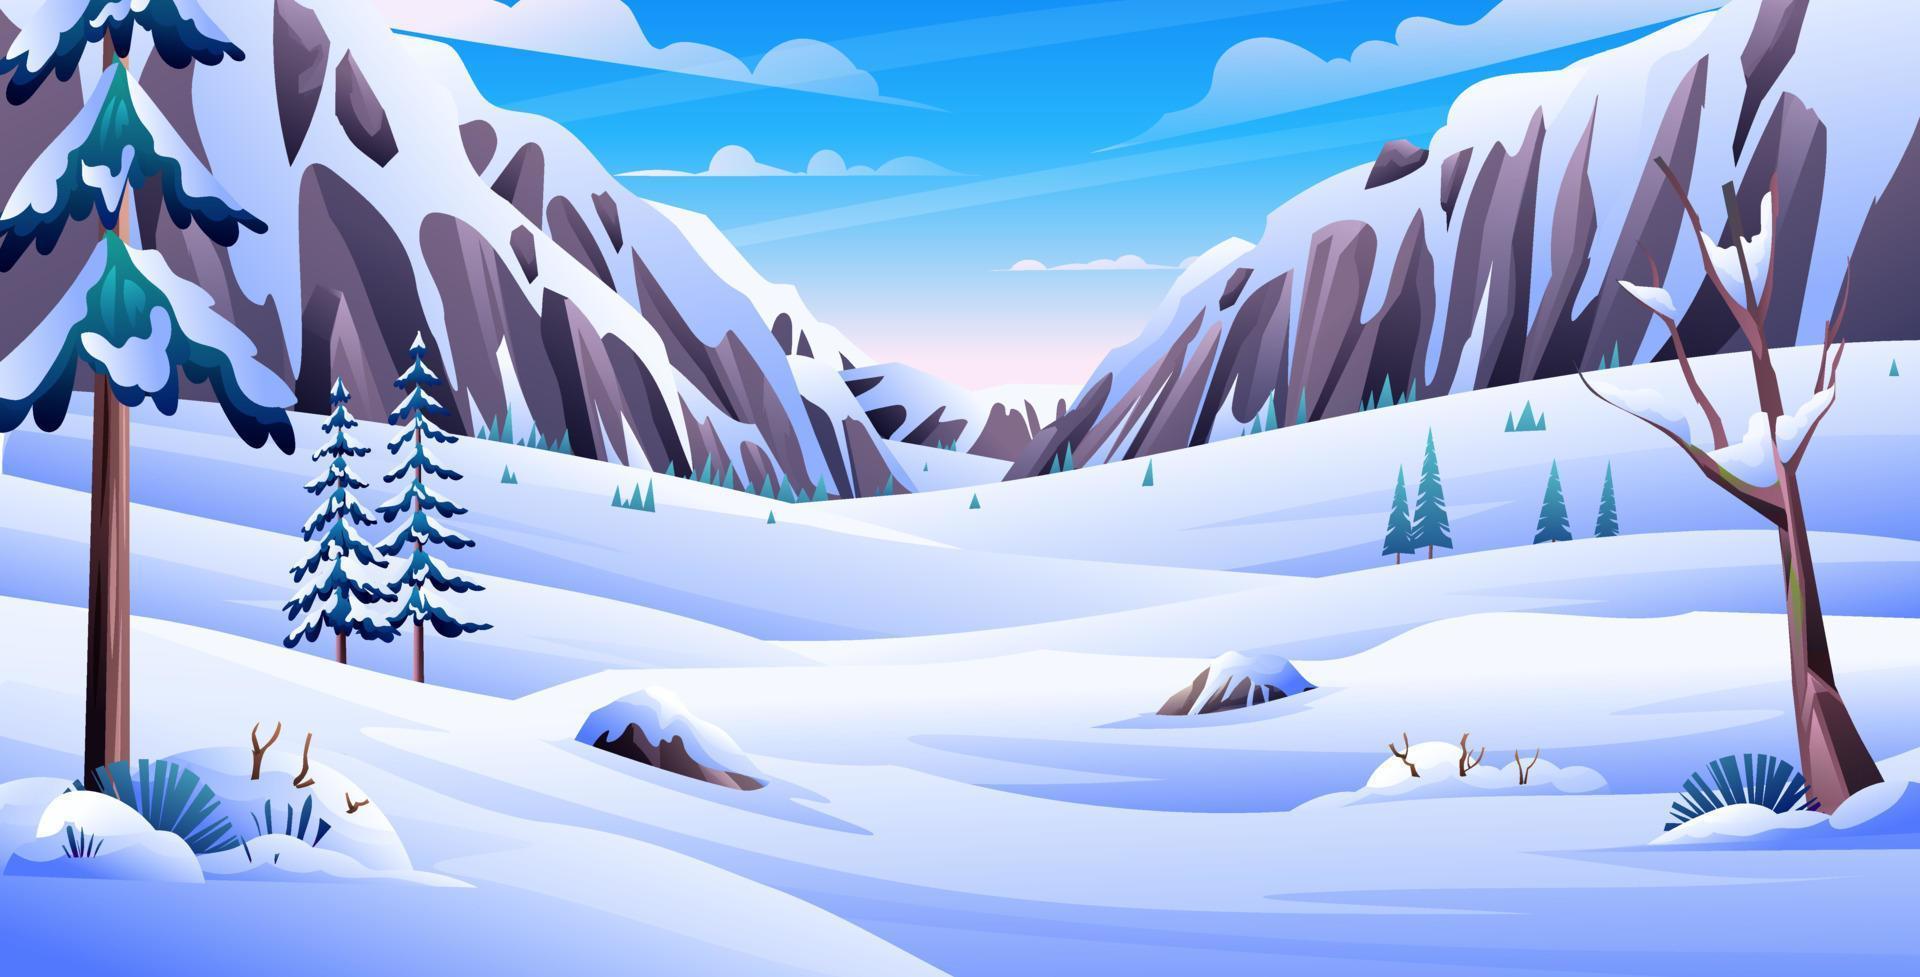 paisaje nevado de invierno con pinos y montañas rocosas ilustración de  dibujos animados de fondo 11171299 Vector en Vecteezy